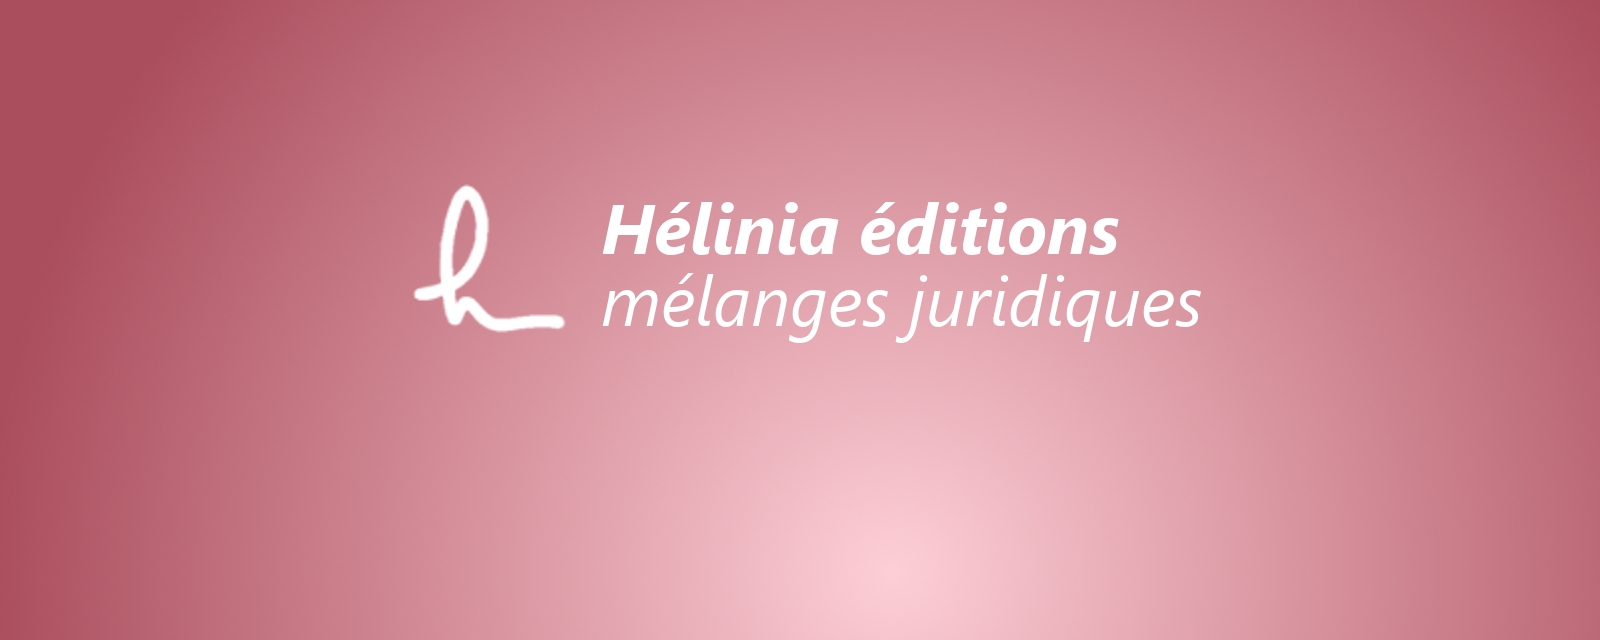 Hélinia - mélanges juridiques